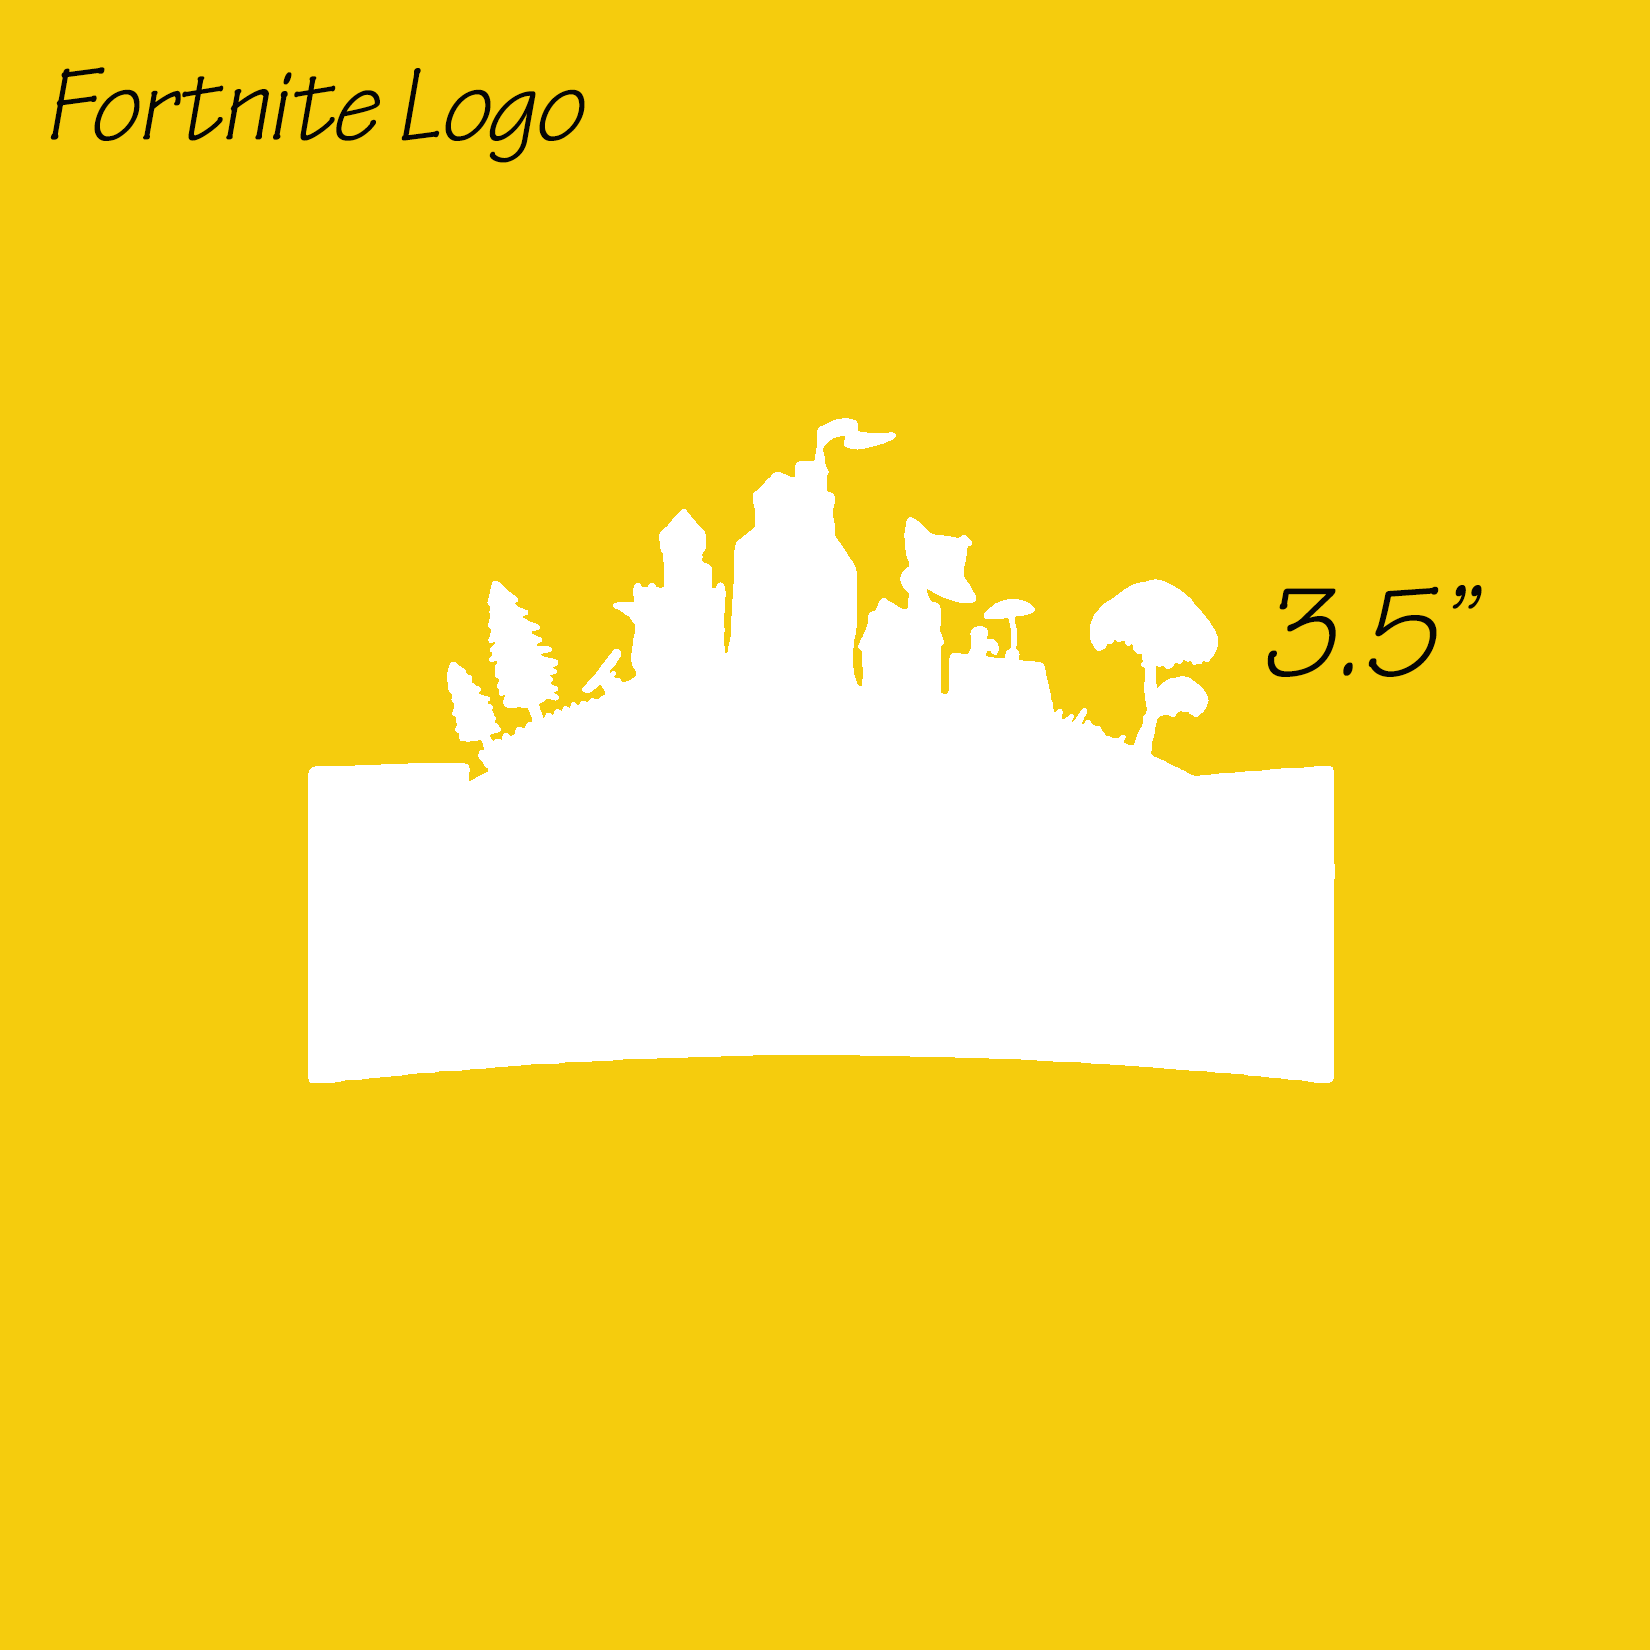 Fortnite Logo - Fortnite Logo